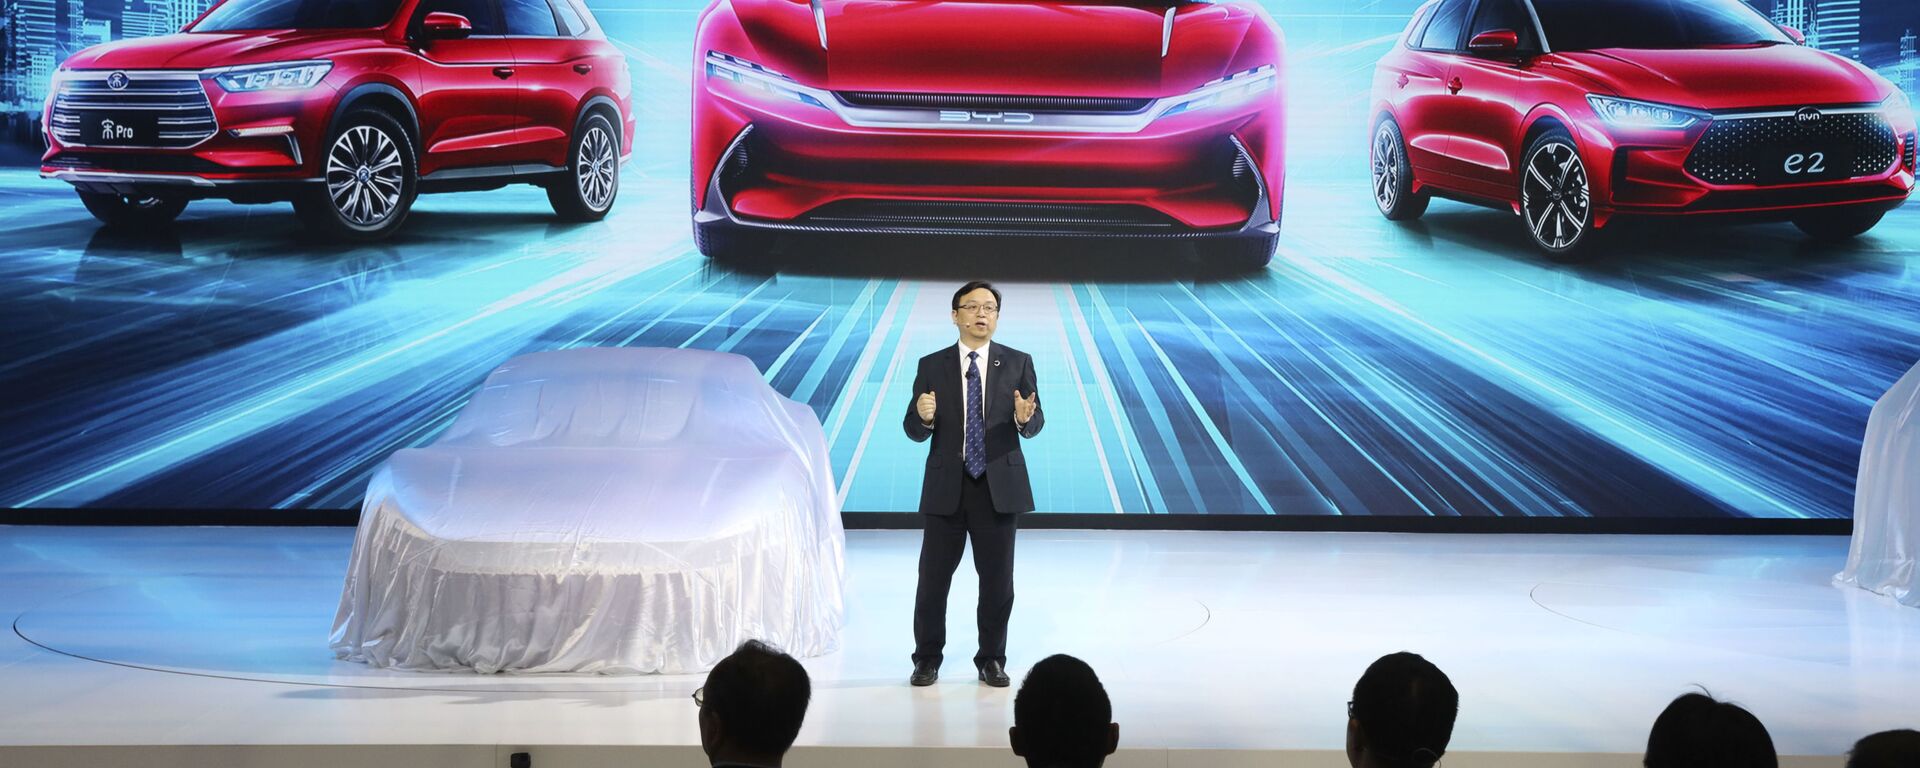 El presidente de BYD Auto, Wang Chuanfu, presenta los últimos modelos de autos eléctricos en Auto Shanghai 2019 - Sputnik Mundo, 1920, 19.06.2019